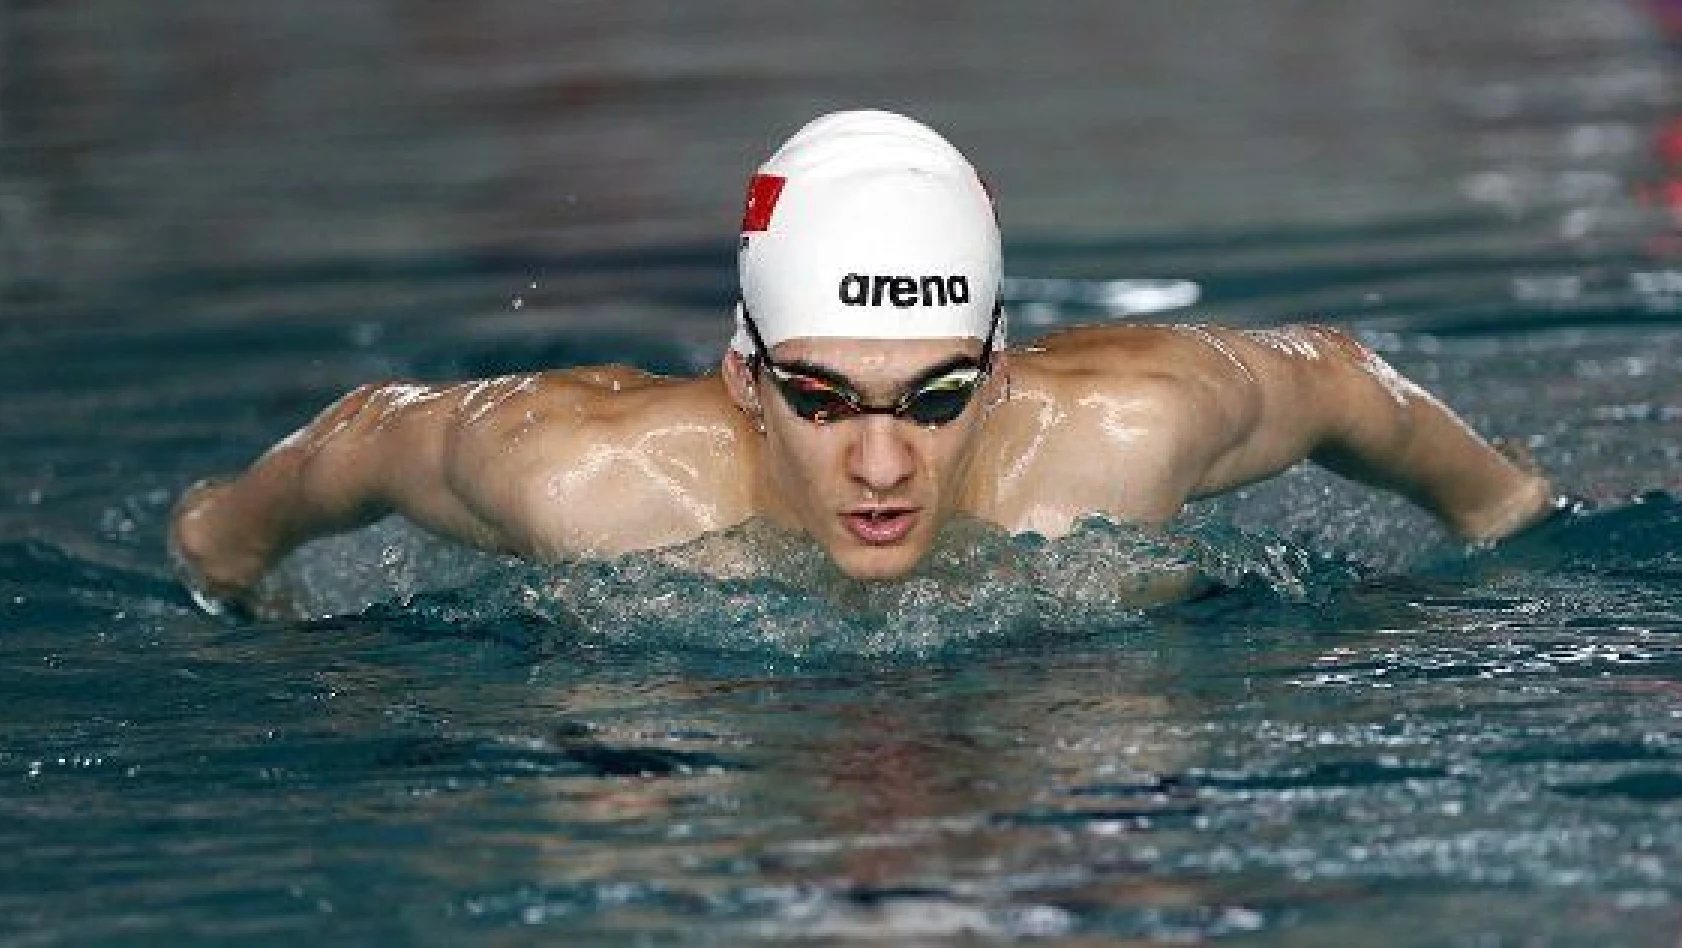 Türkiye rekortmeni milli yüzücü Yiğit Aslan, olimpiyat hedefi için kulaç atıyor